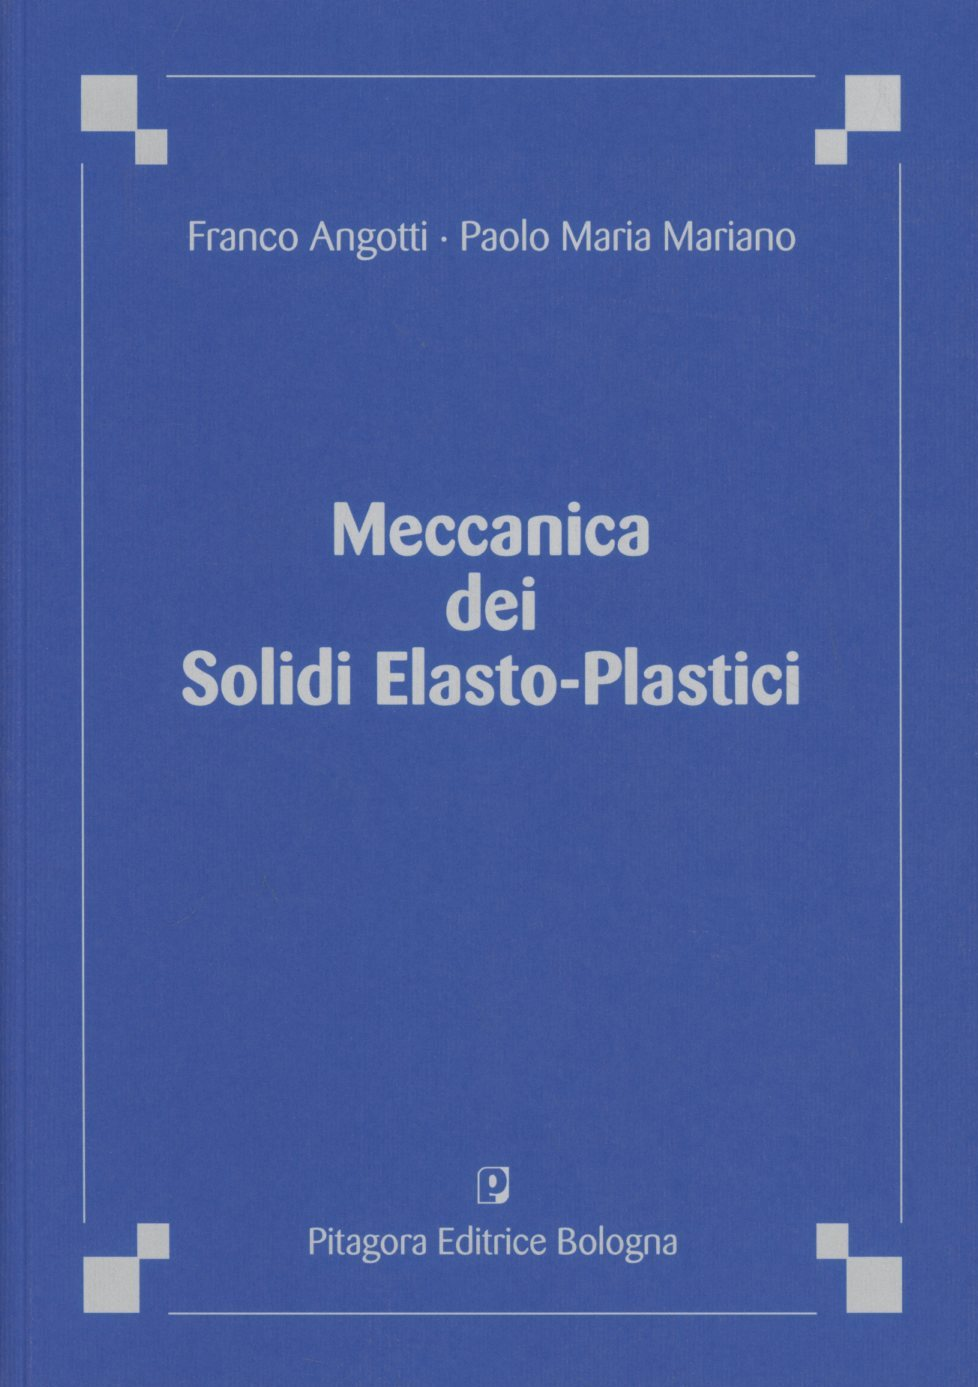 Image of Meccanica dei solidi elasto-plastici